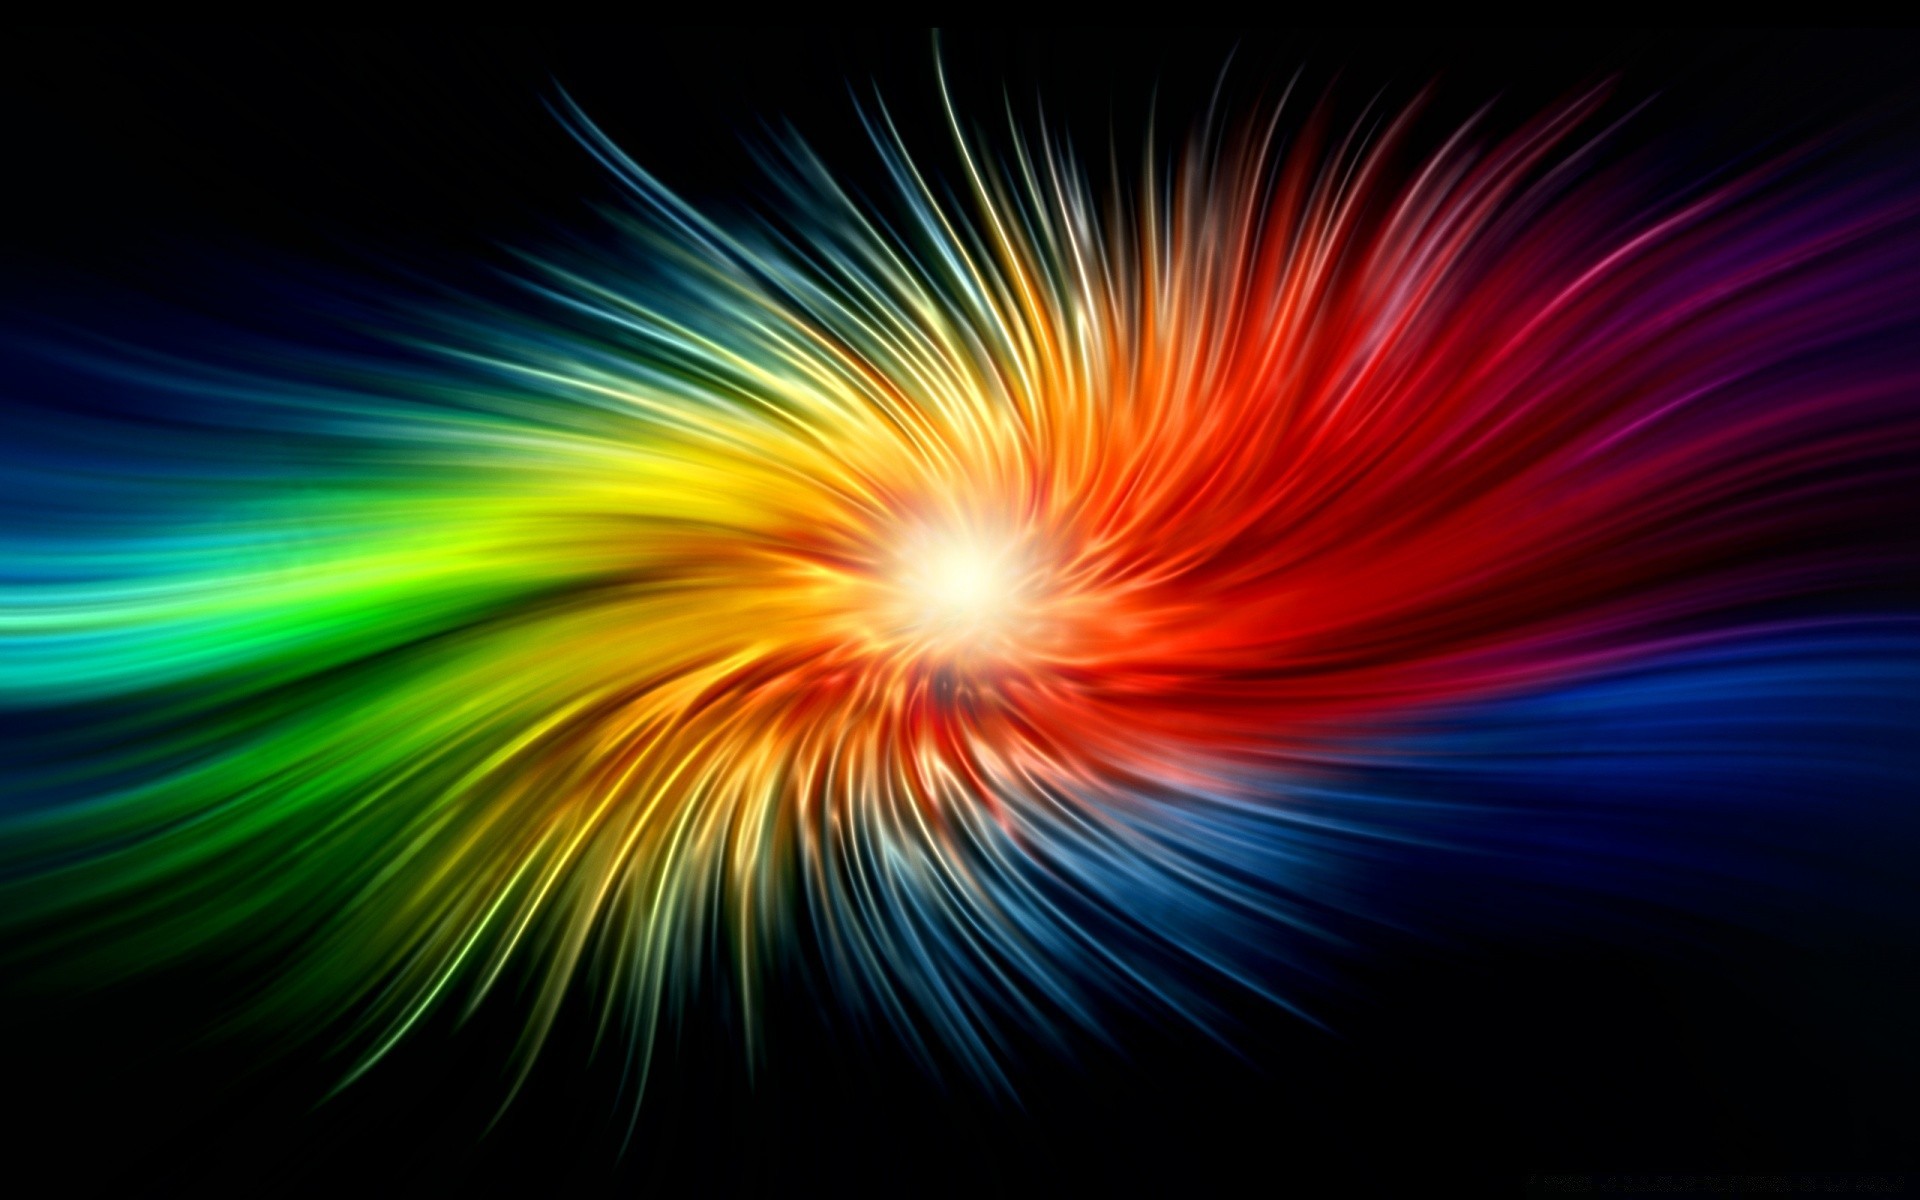 радуга размытость яркий свет аннотация взрыв люминесценция пламя светит магия энергии обои графический дизайн